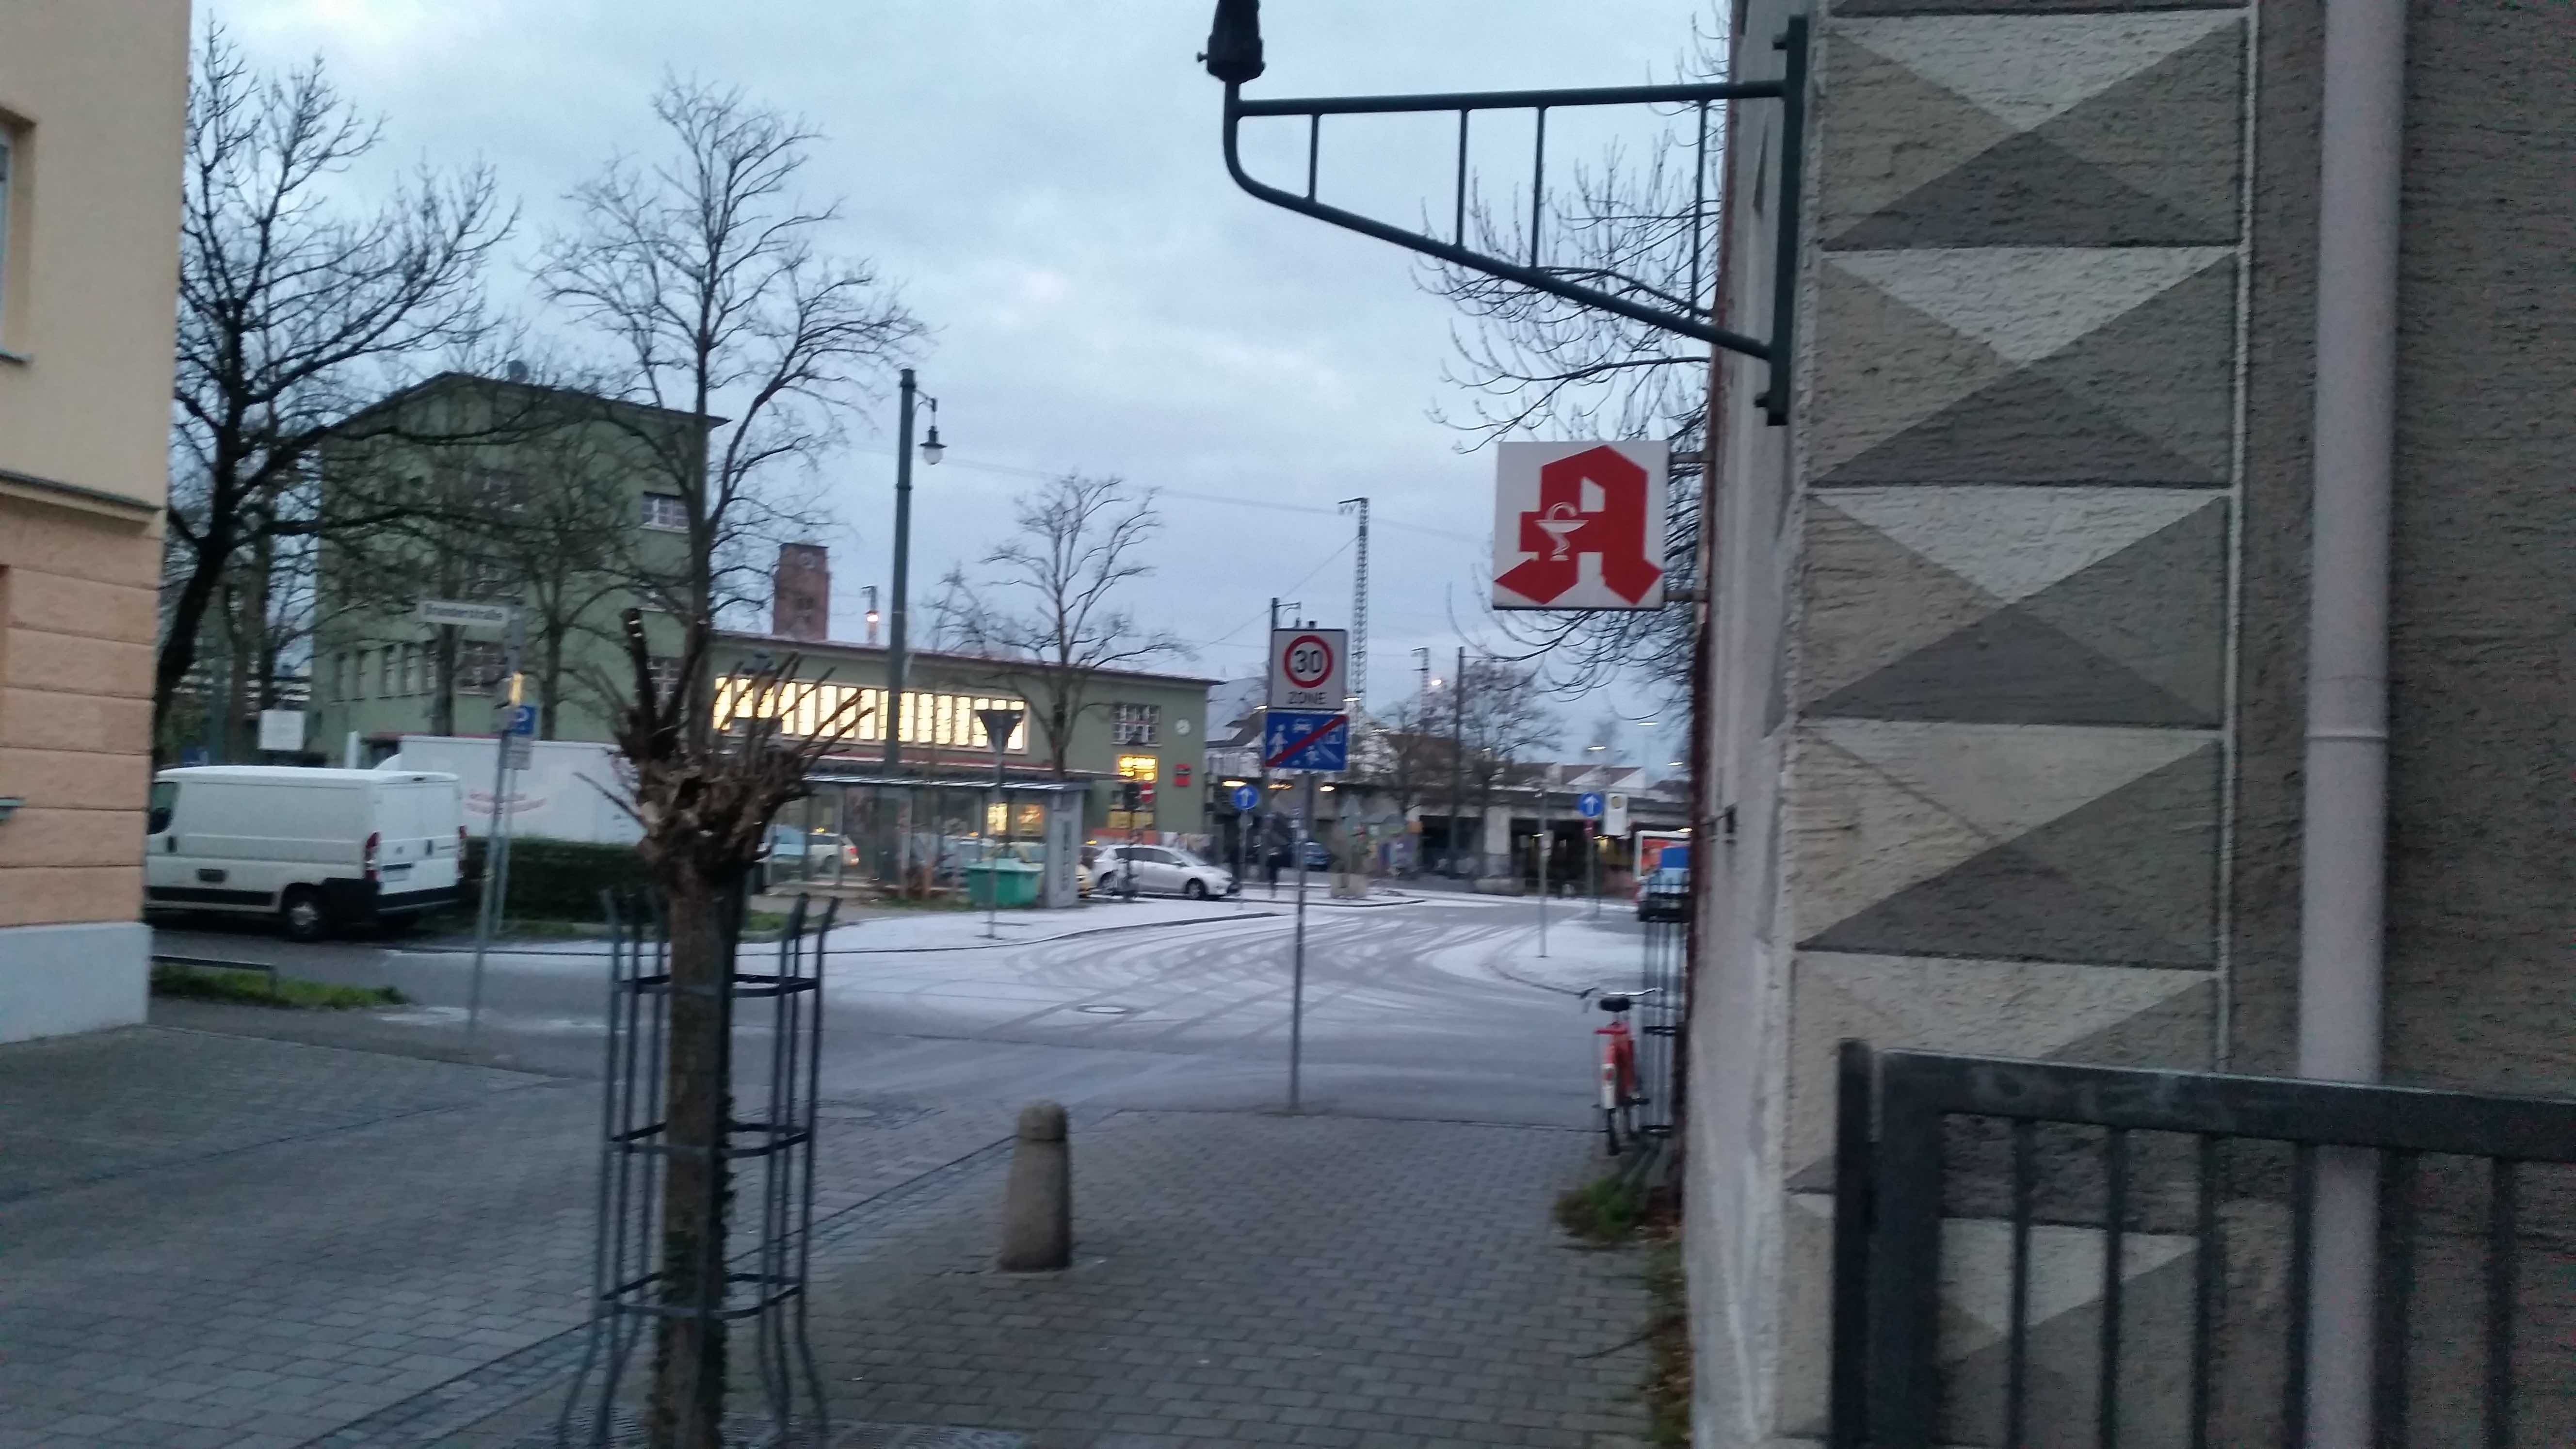 Oberhauser Bahnhof - Im Vordergrund die ehem. Apotheke, wo der neue Süchtigen-Treff verortet werden soll